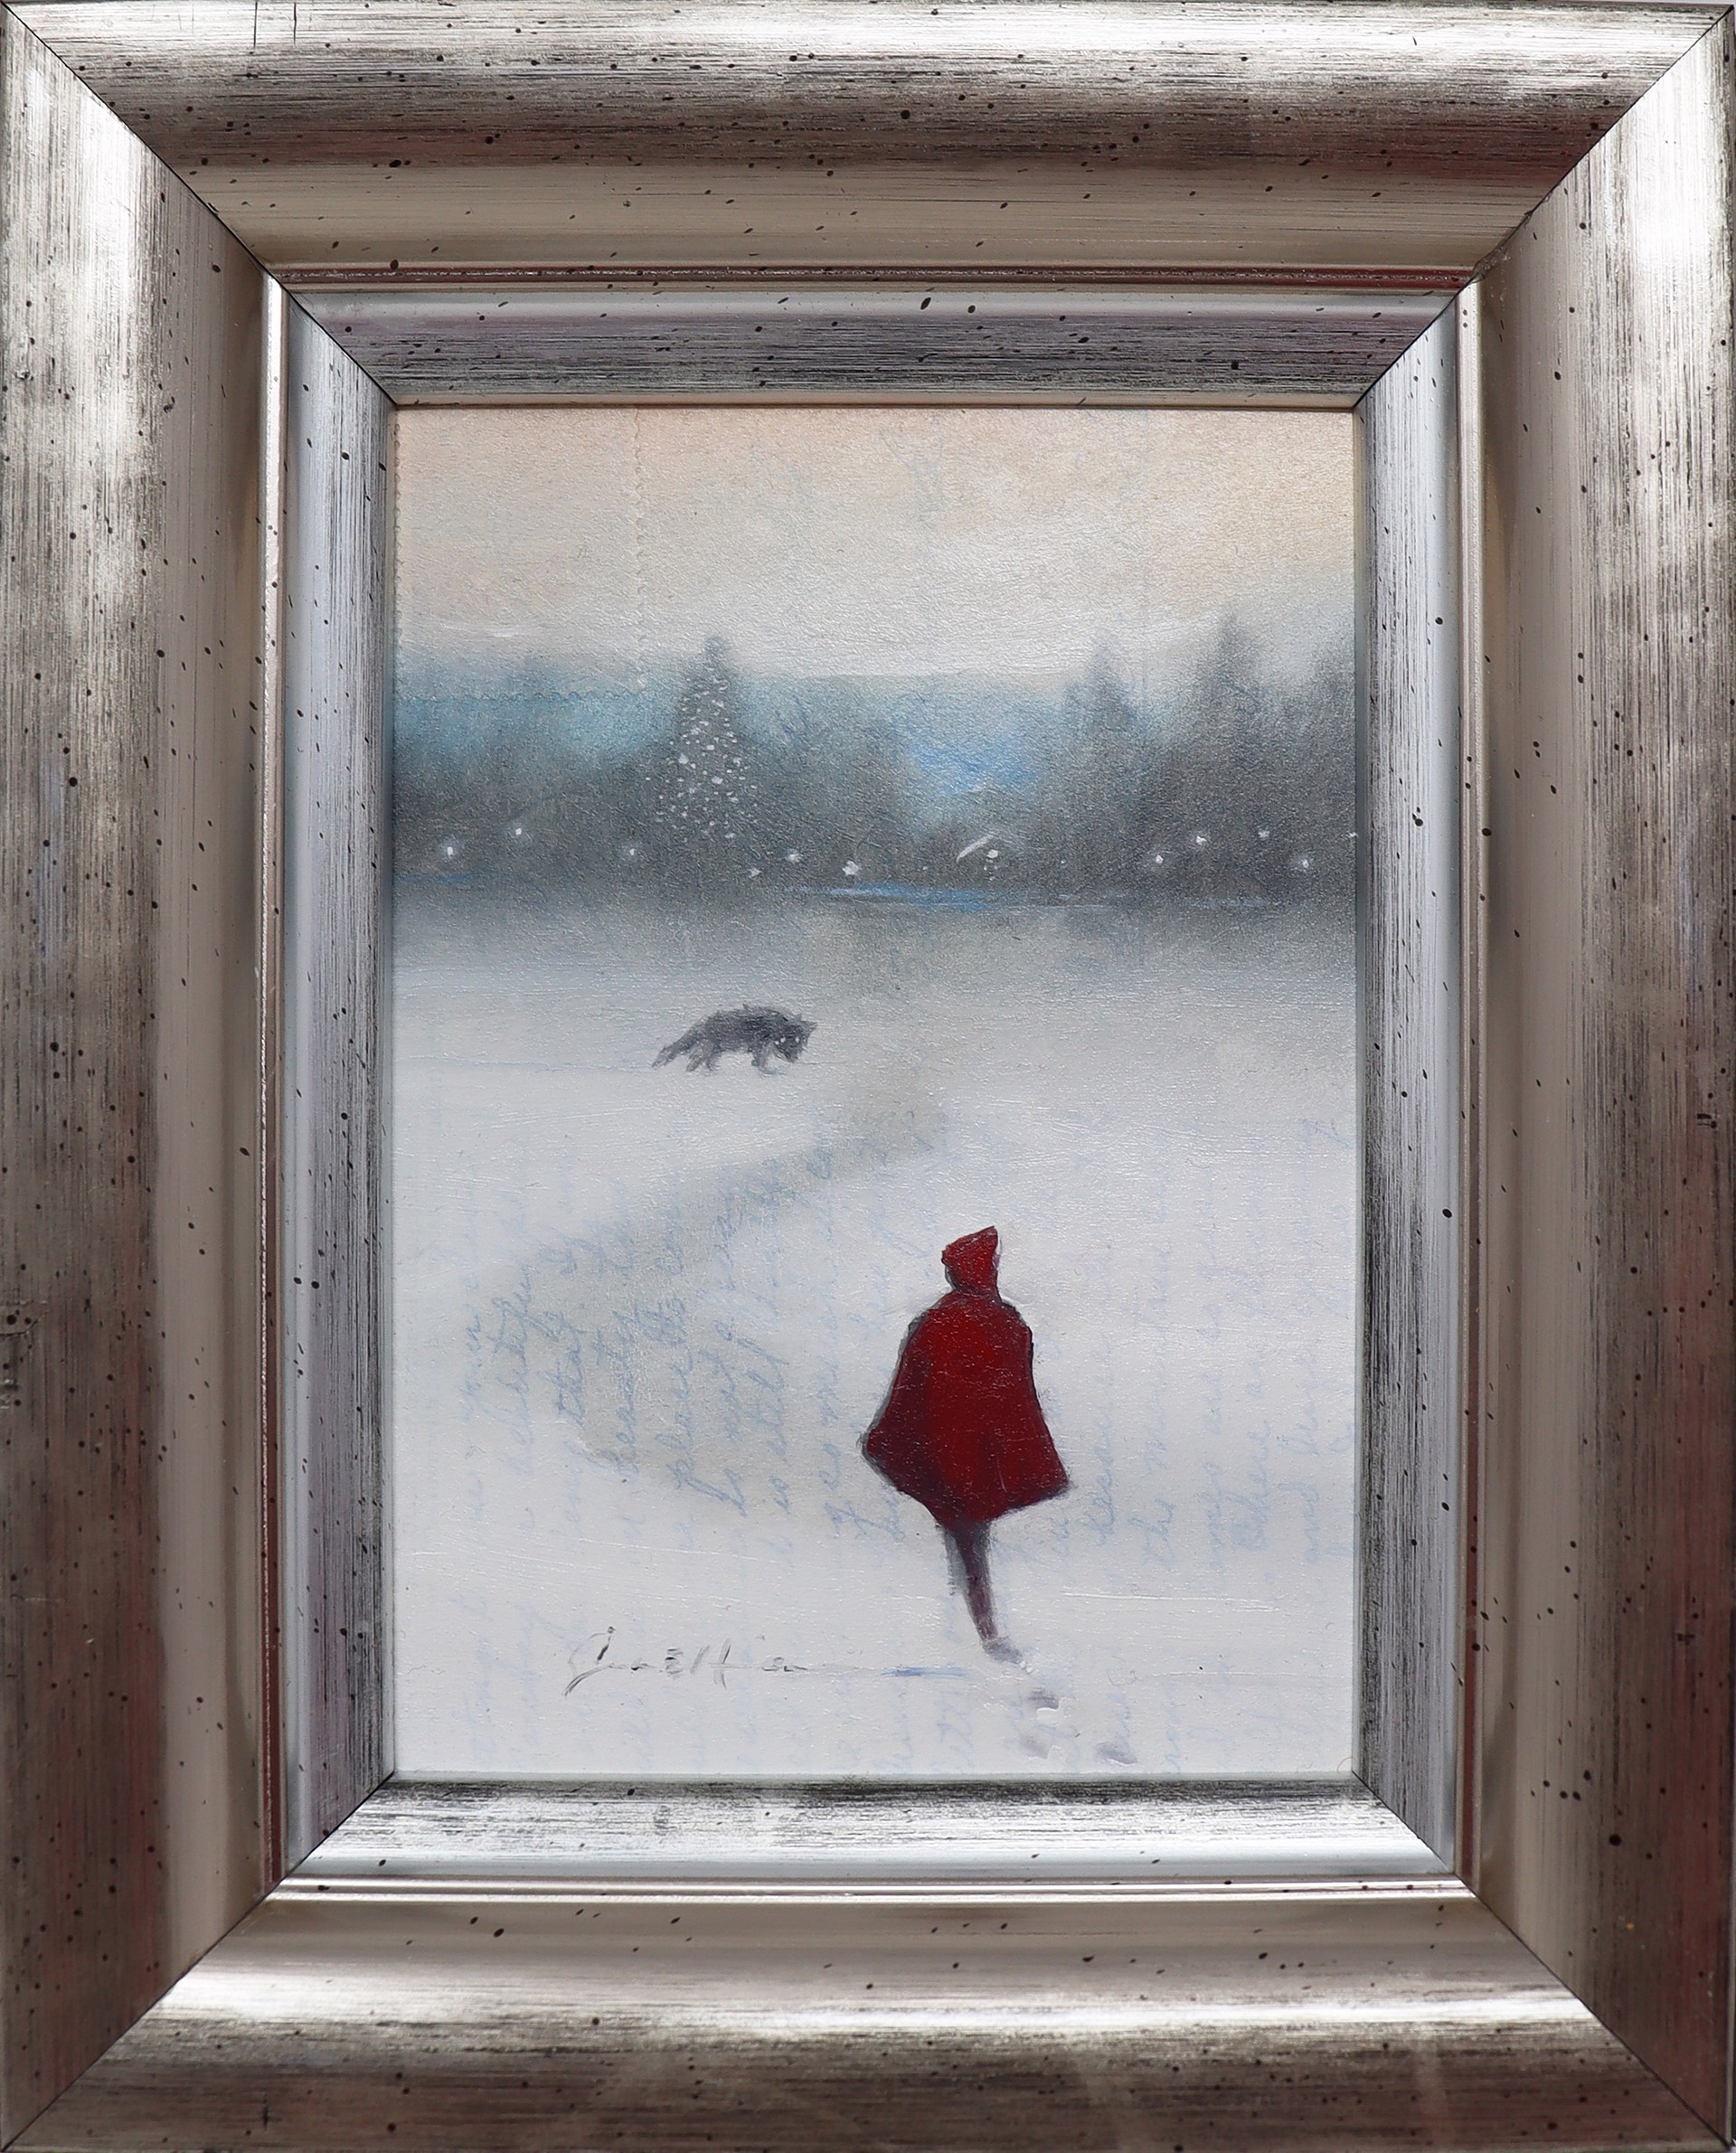 Little Red Riding Hood by Scott E. Hill